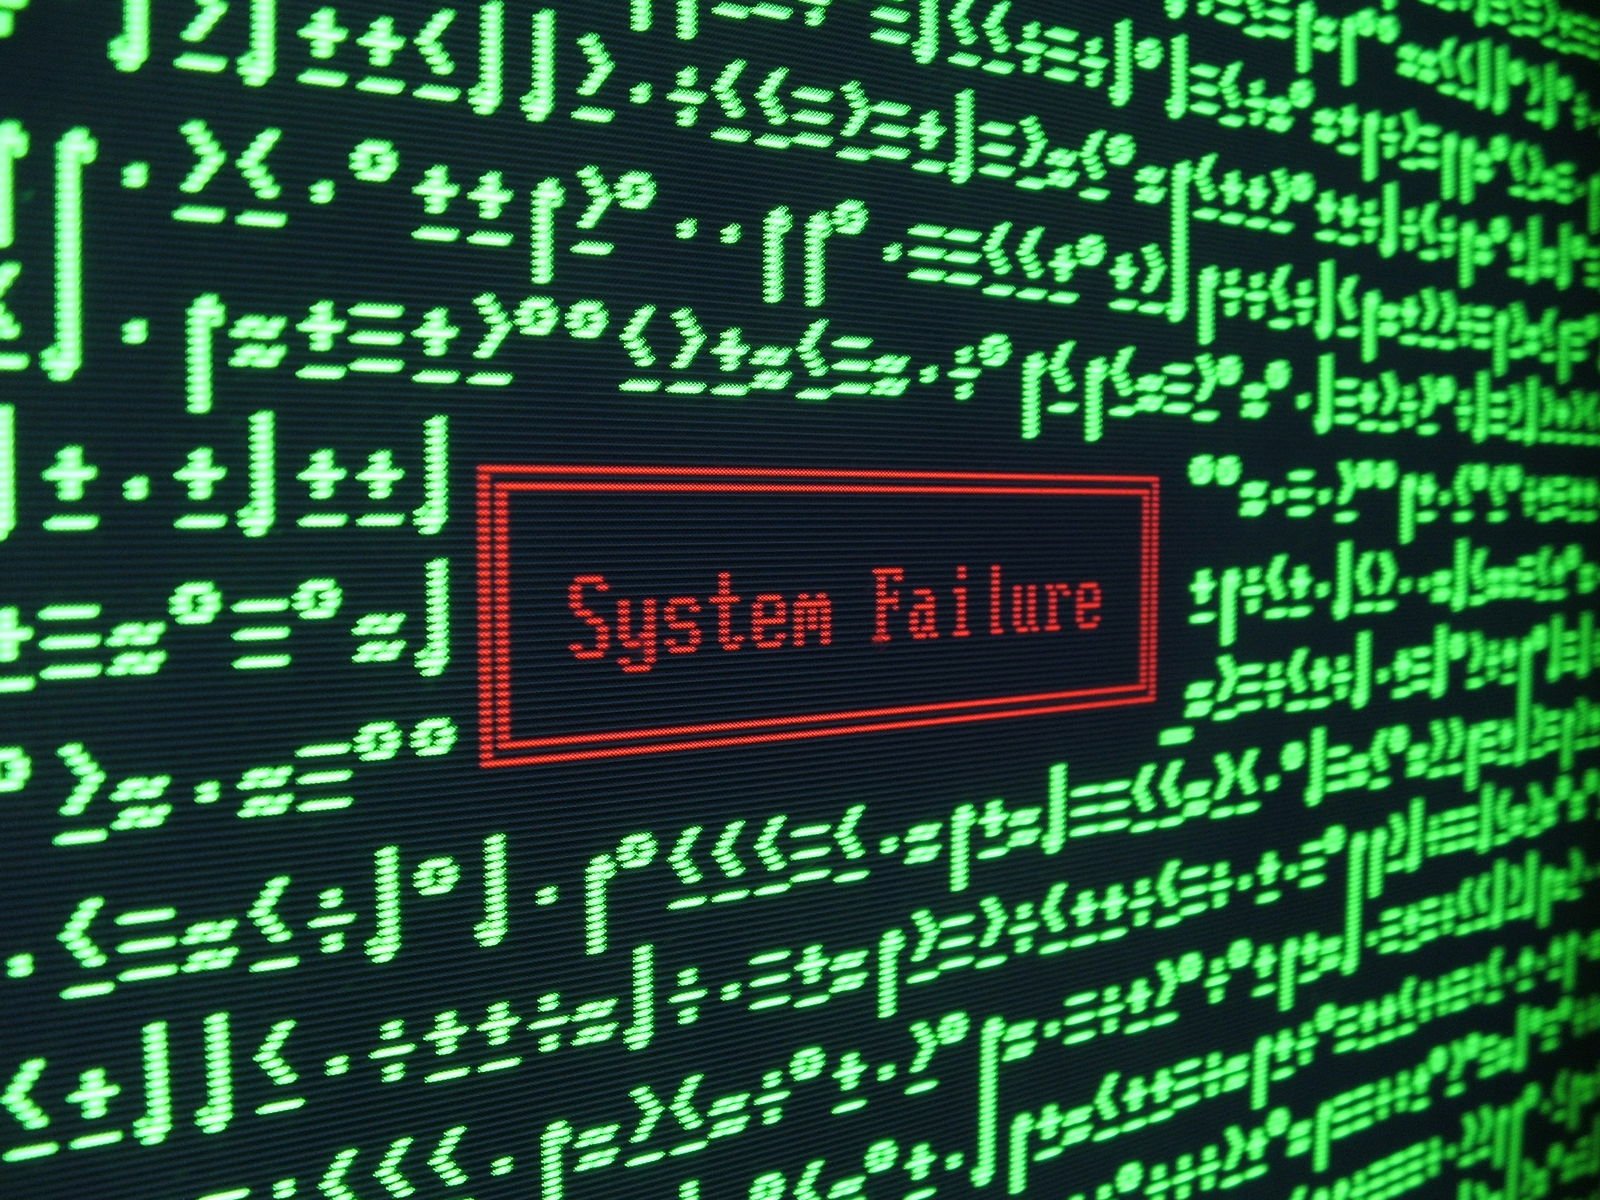 These systems are failing. Сбой системы. Компьютерная ошибка. Системный сбой. Сбой в работе системы.